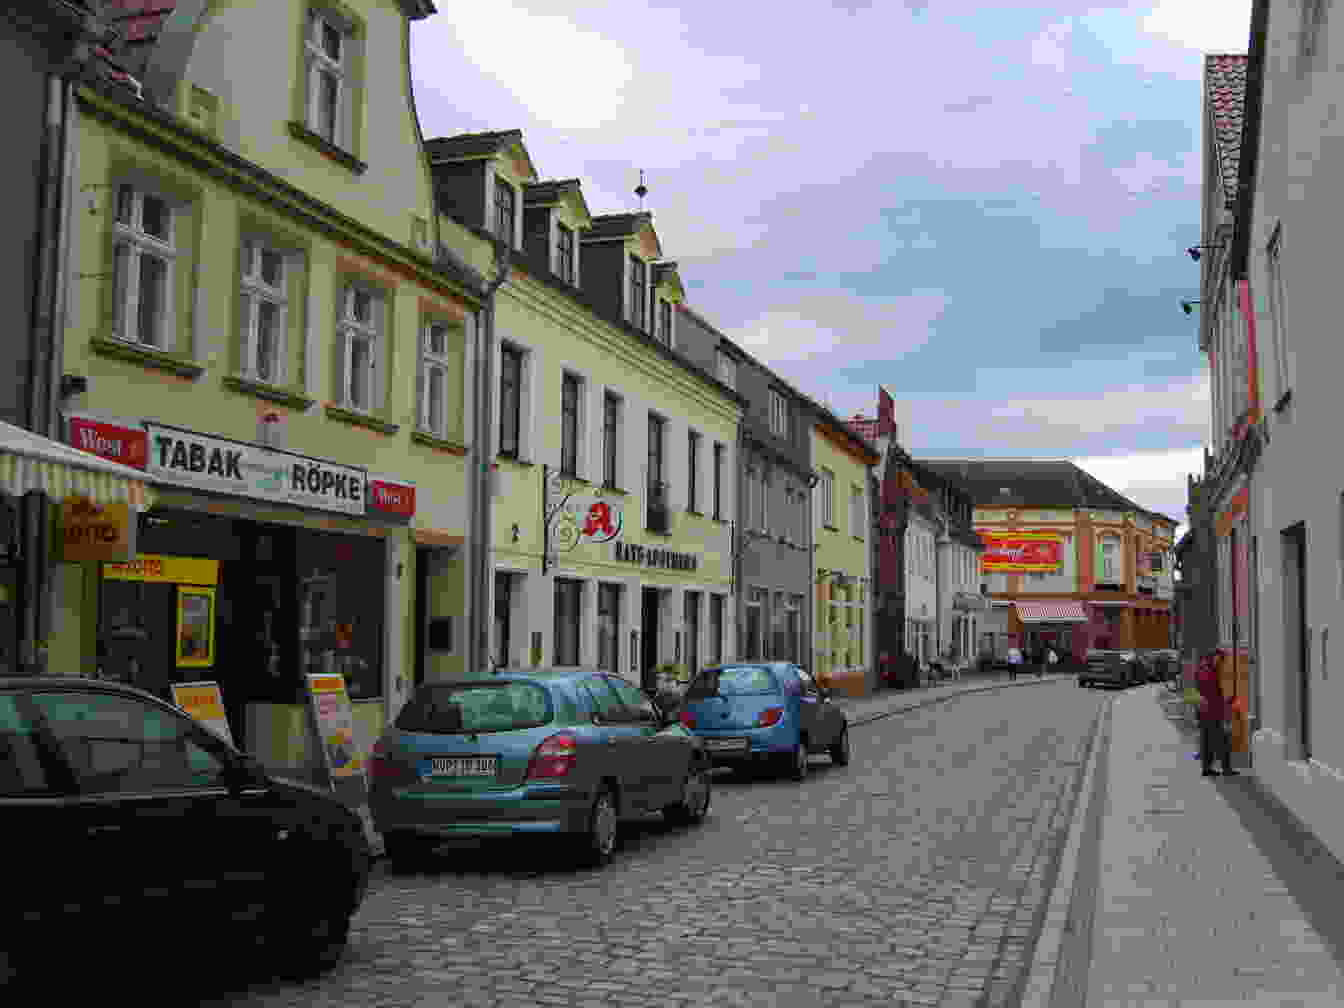 Bild der Stadt Grimmen